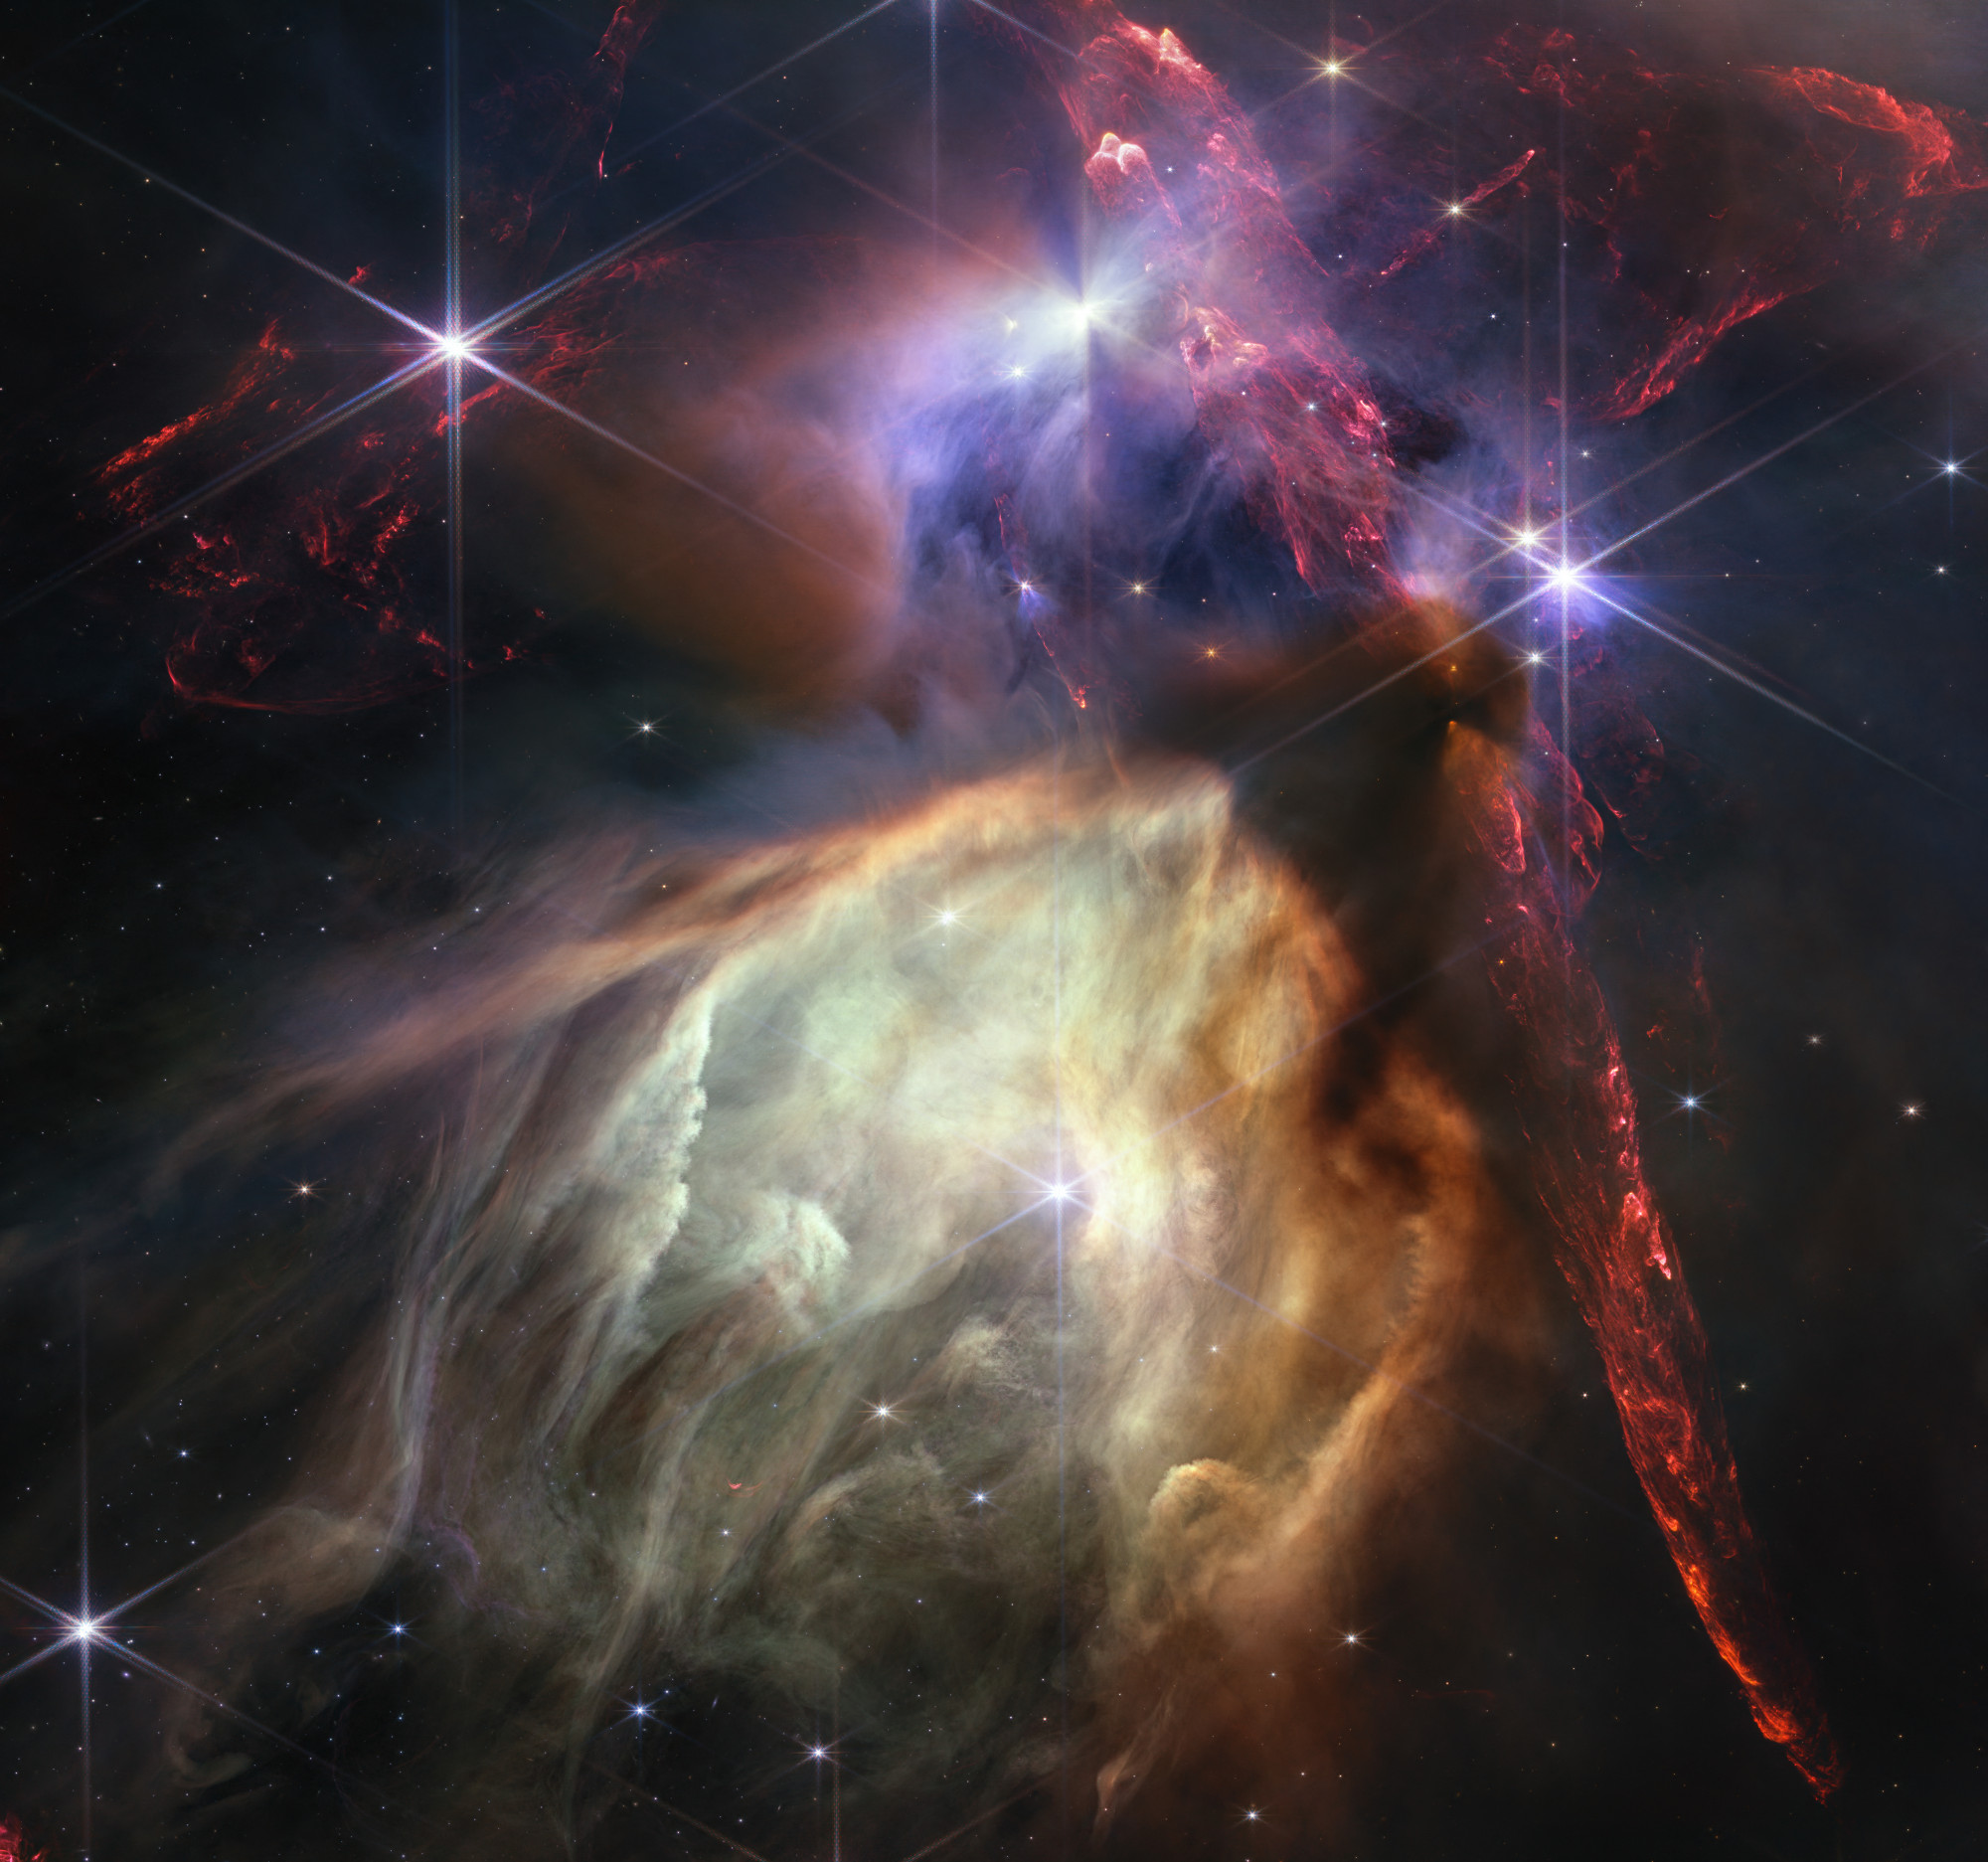 Egy éve hesszeli az űrt a James Webb űrteleszkóp: csillagbölcsőről készült példátlanul részletes képpel ünnepel a NASA